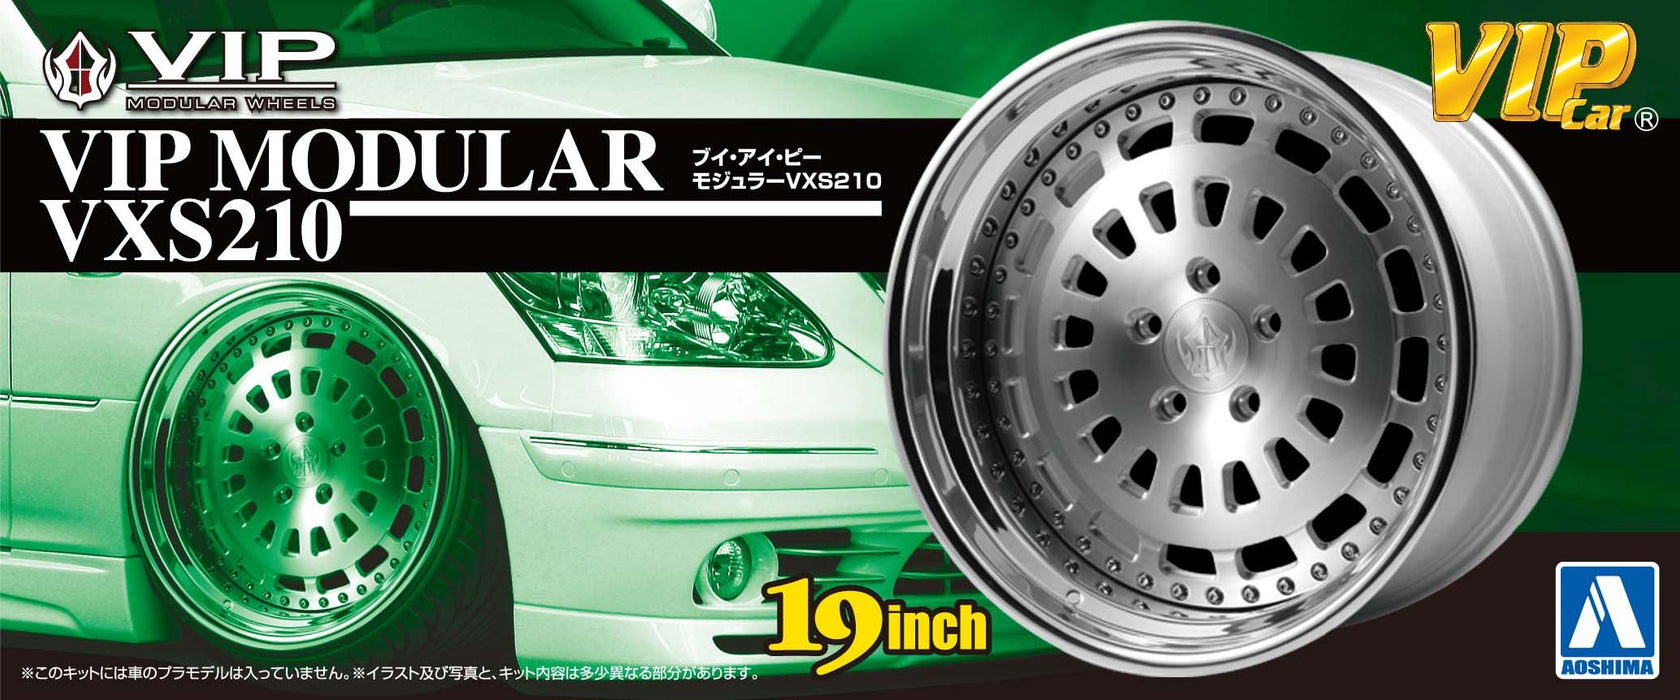 AOSHIMA 09093 Vip Car Tire & Wheel Set Vip Modular Vxs210 19 Inch 1/24 Scale Kit